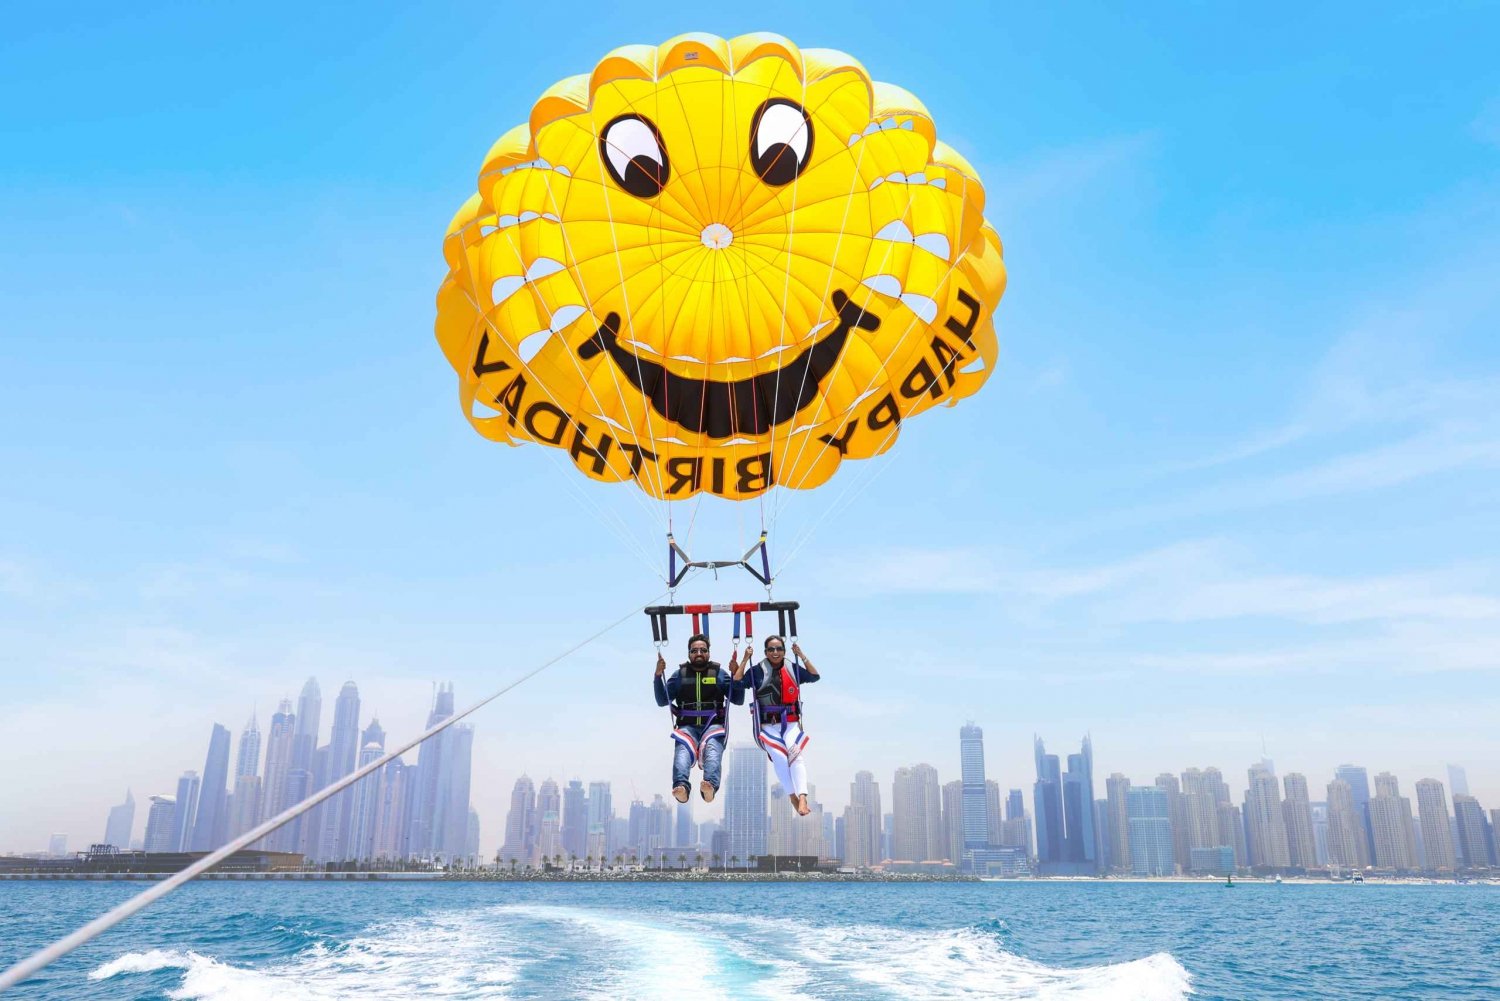 Dubai: Parasailing with Happy birthday Parachute JBR & Palm